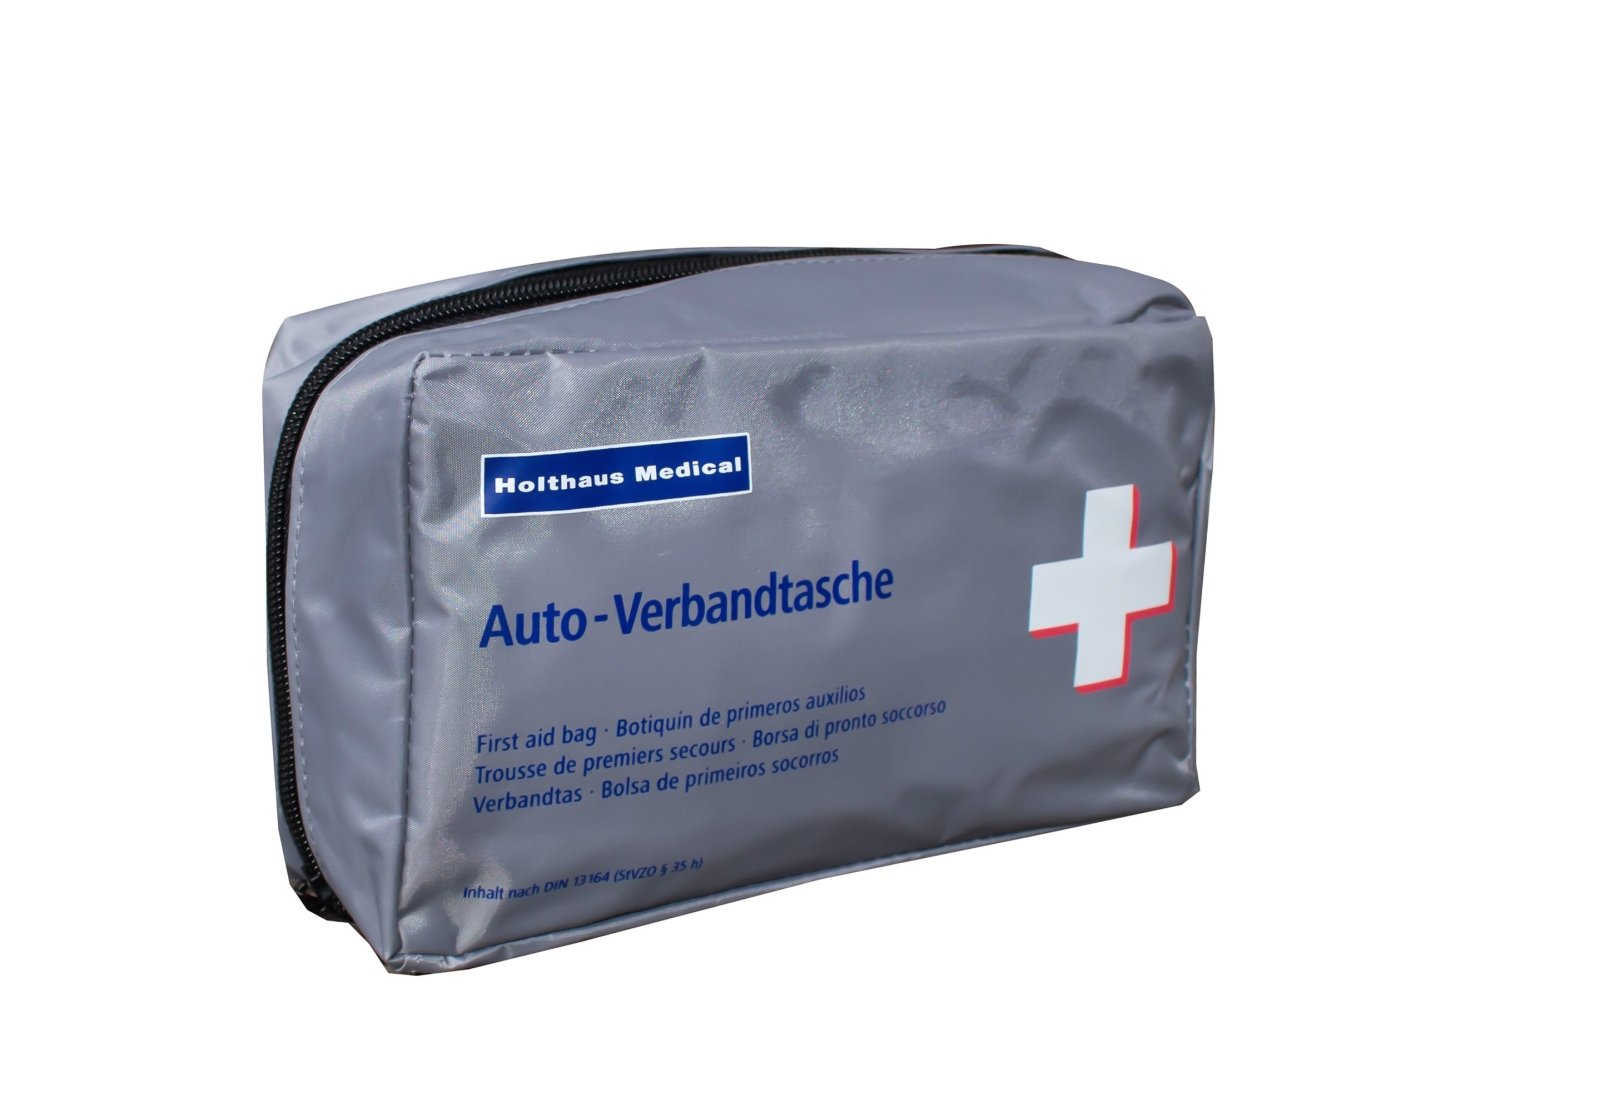 Holthaus Medical Kfz-Verbandtasche Auto-Verbandkasten mit Malteser Anw –  Medi-Inn